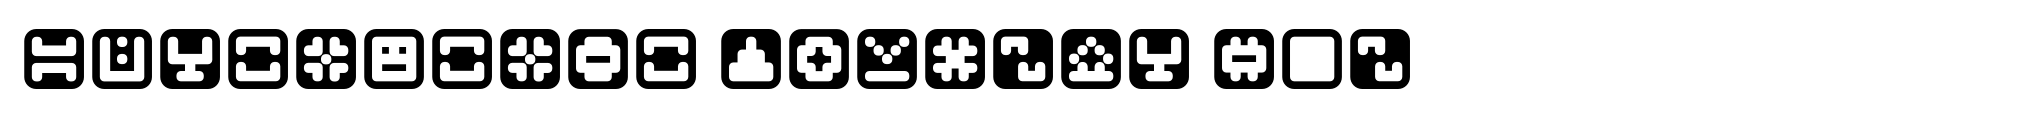 Mastertext Symbols Two image